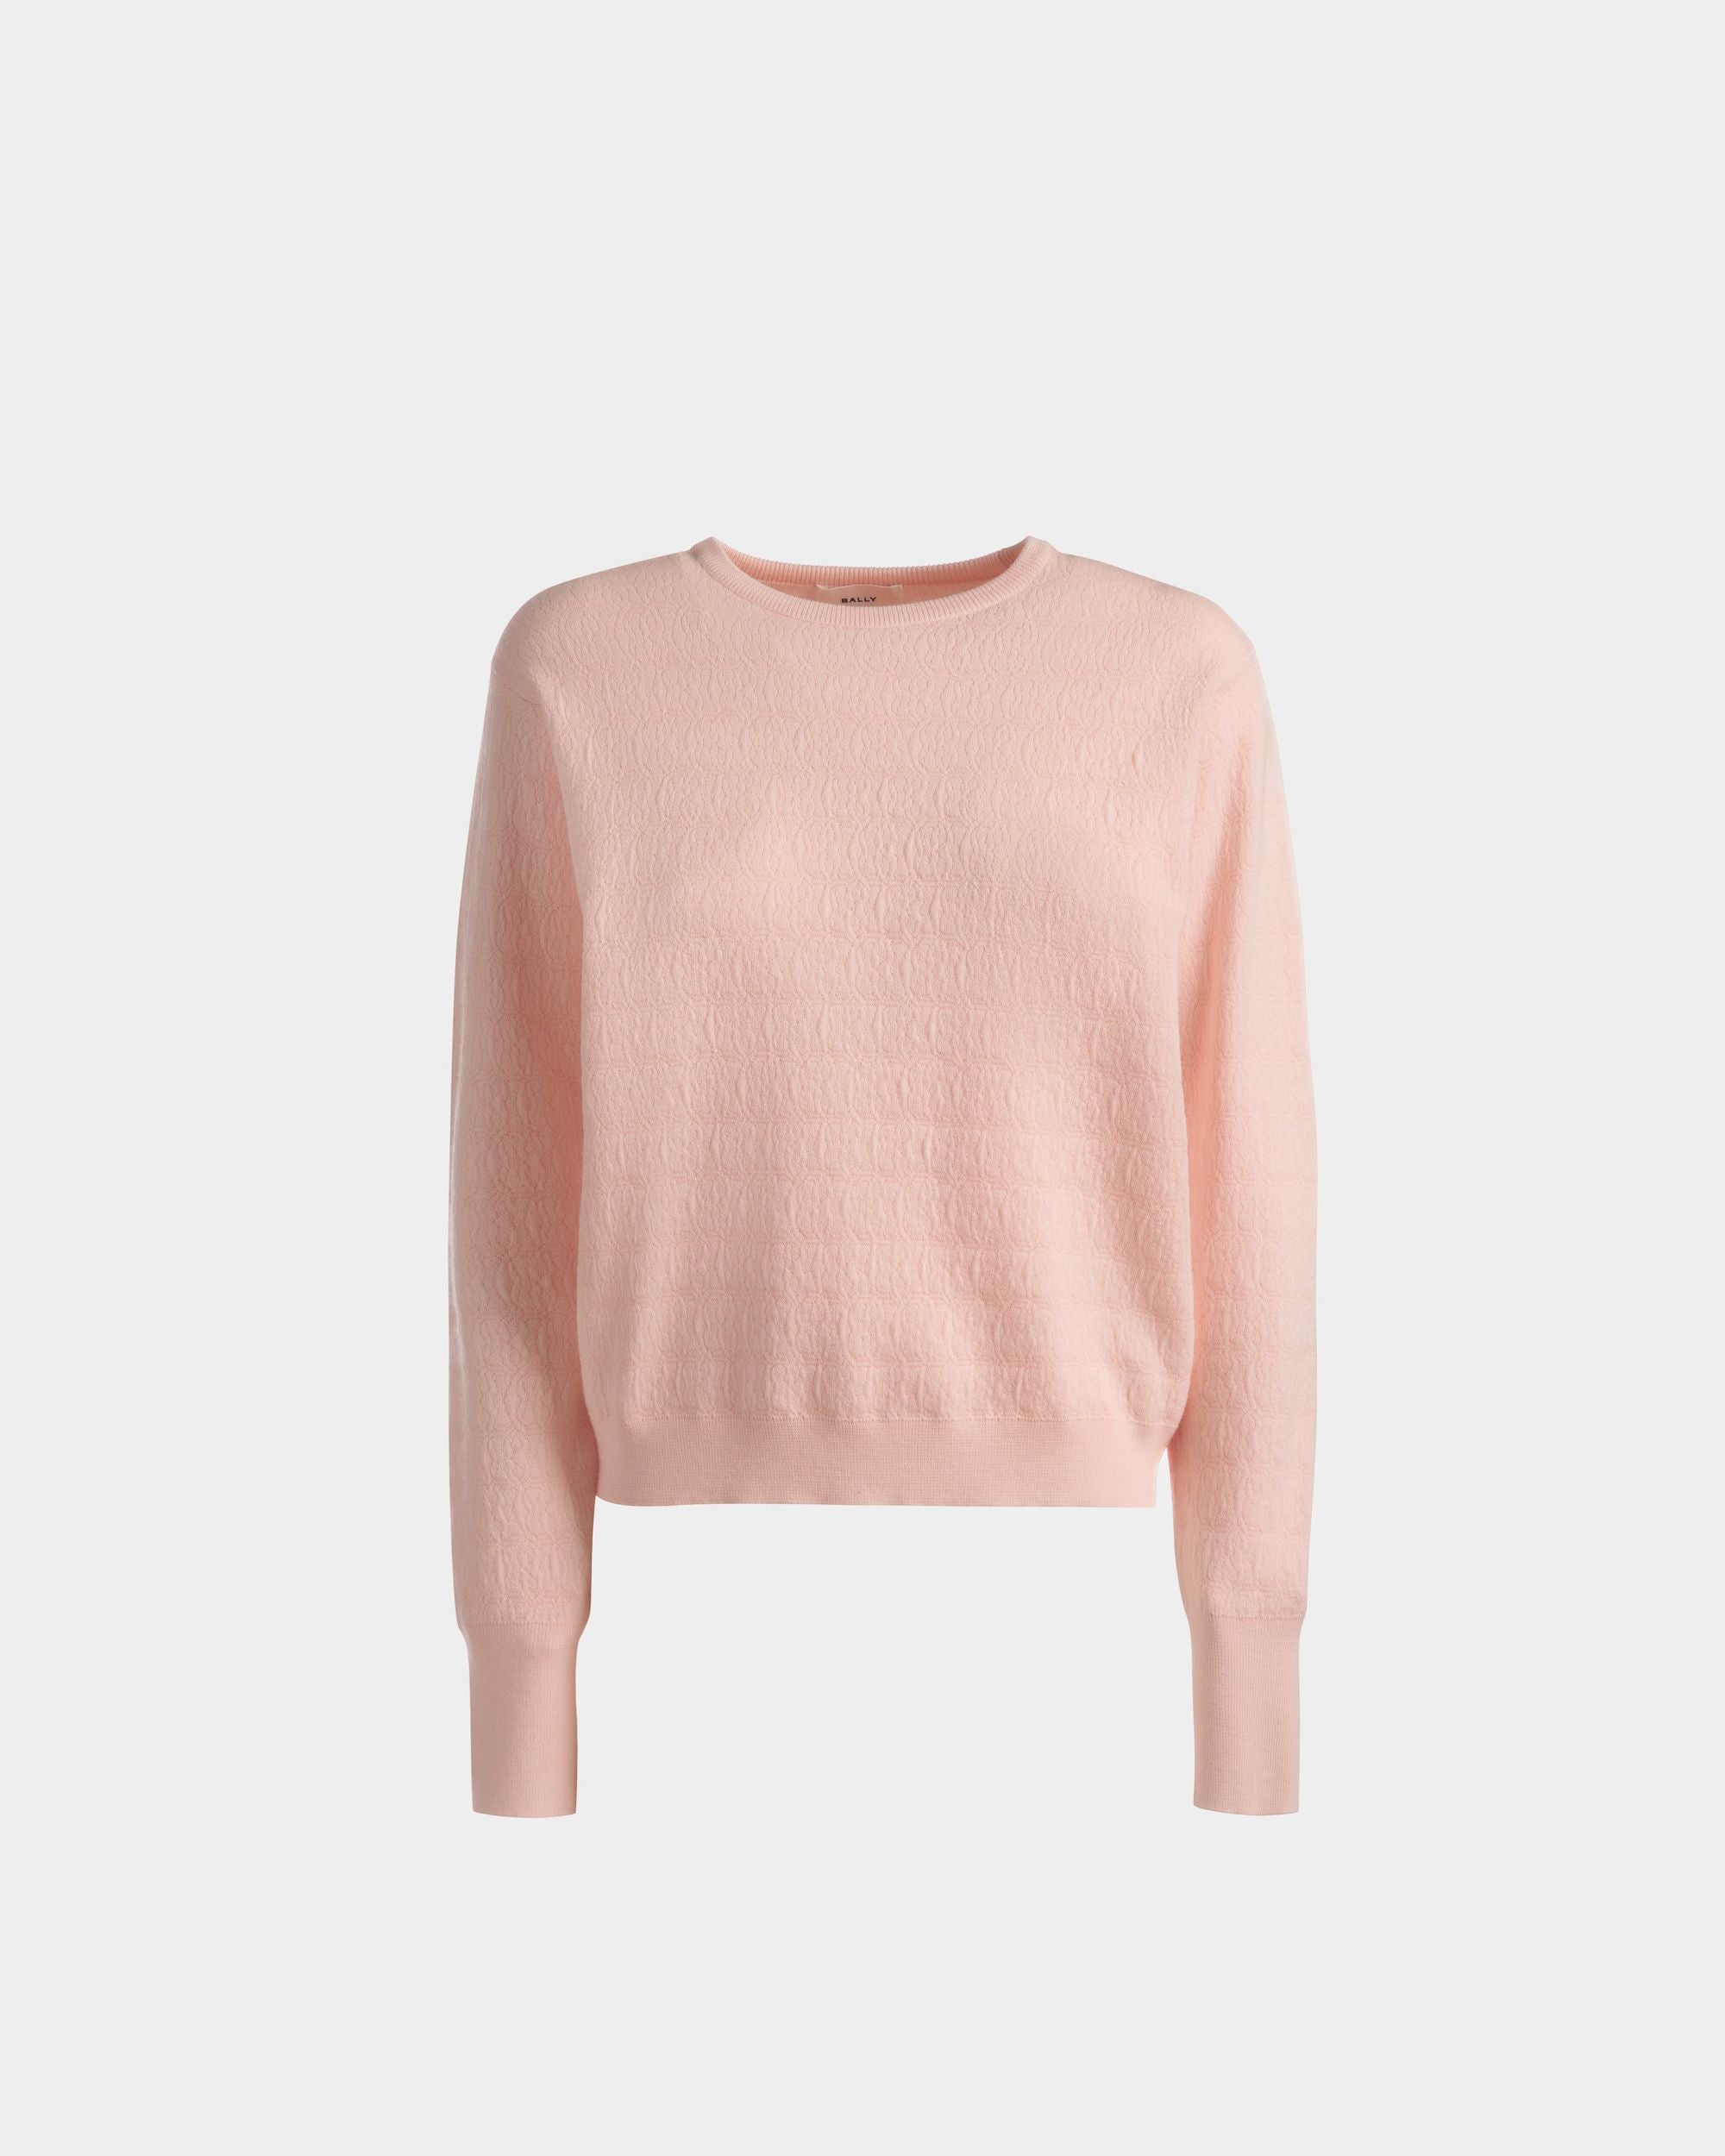 Crew Neck Sweater | Women's Sweater | Dusty Petal Wool | Bally | Still Life Front